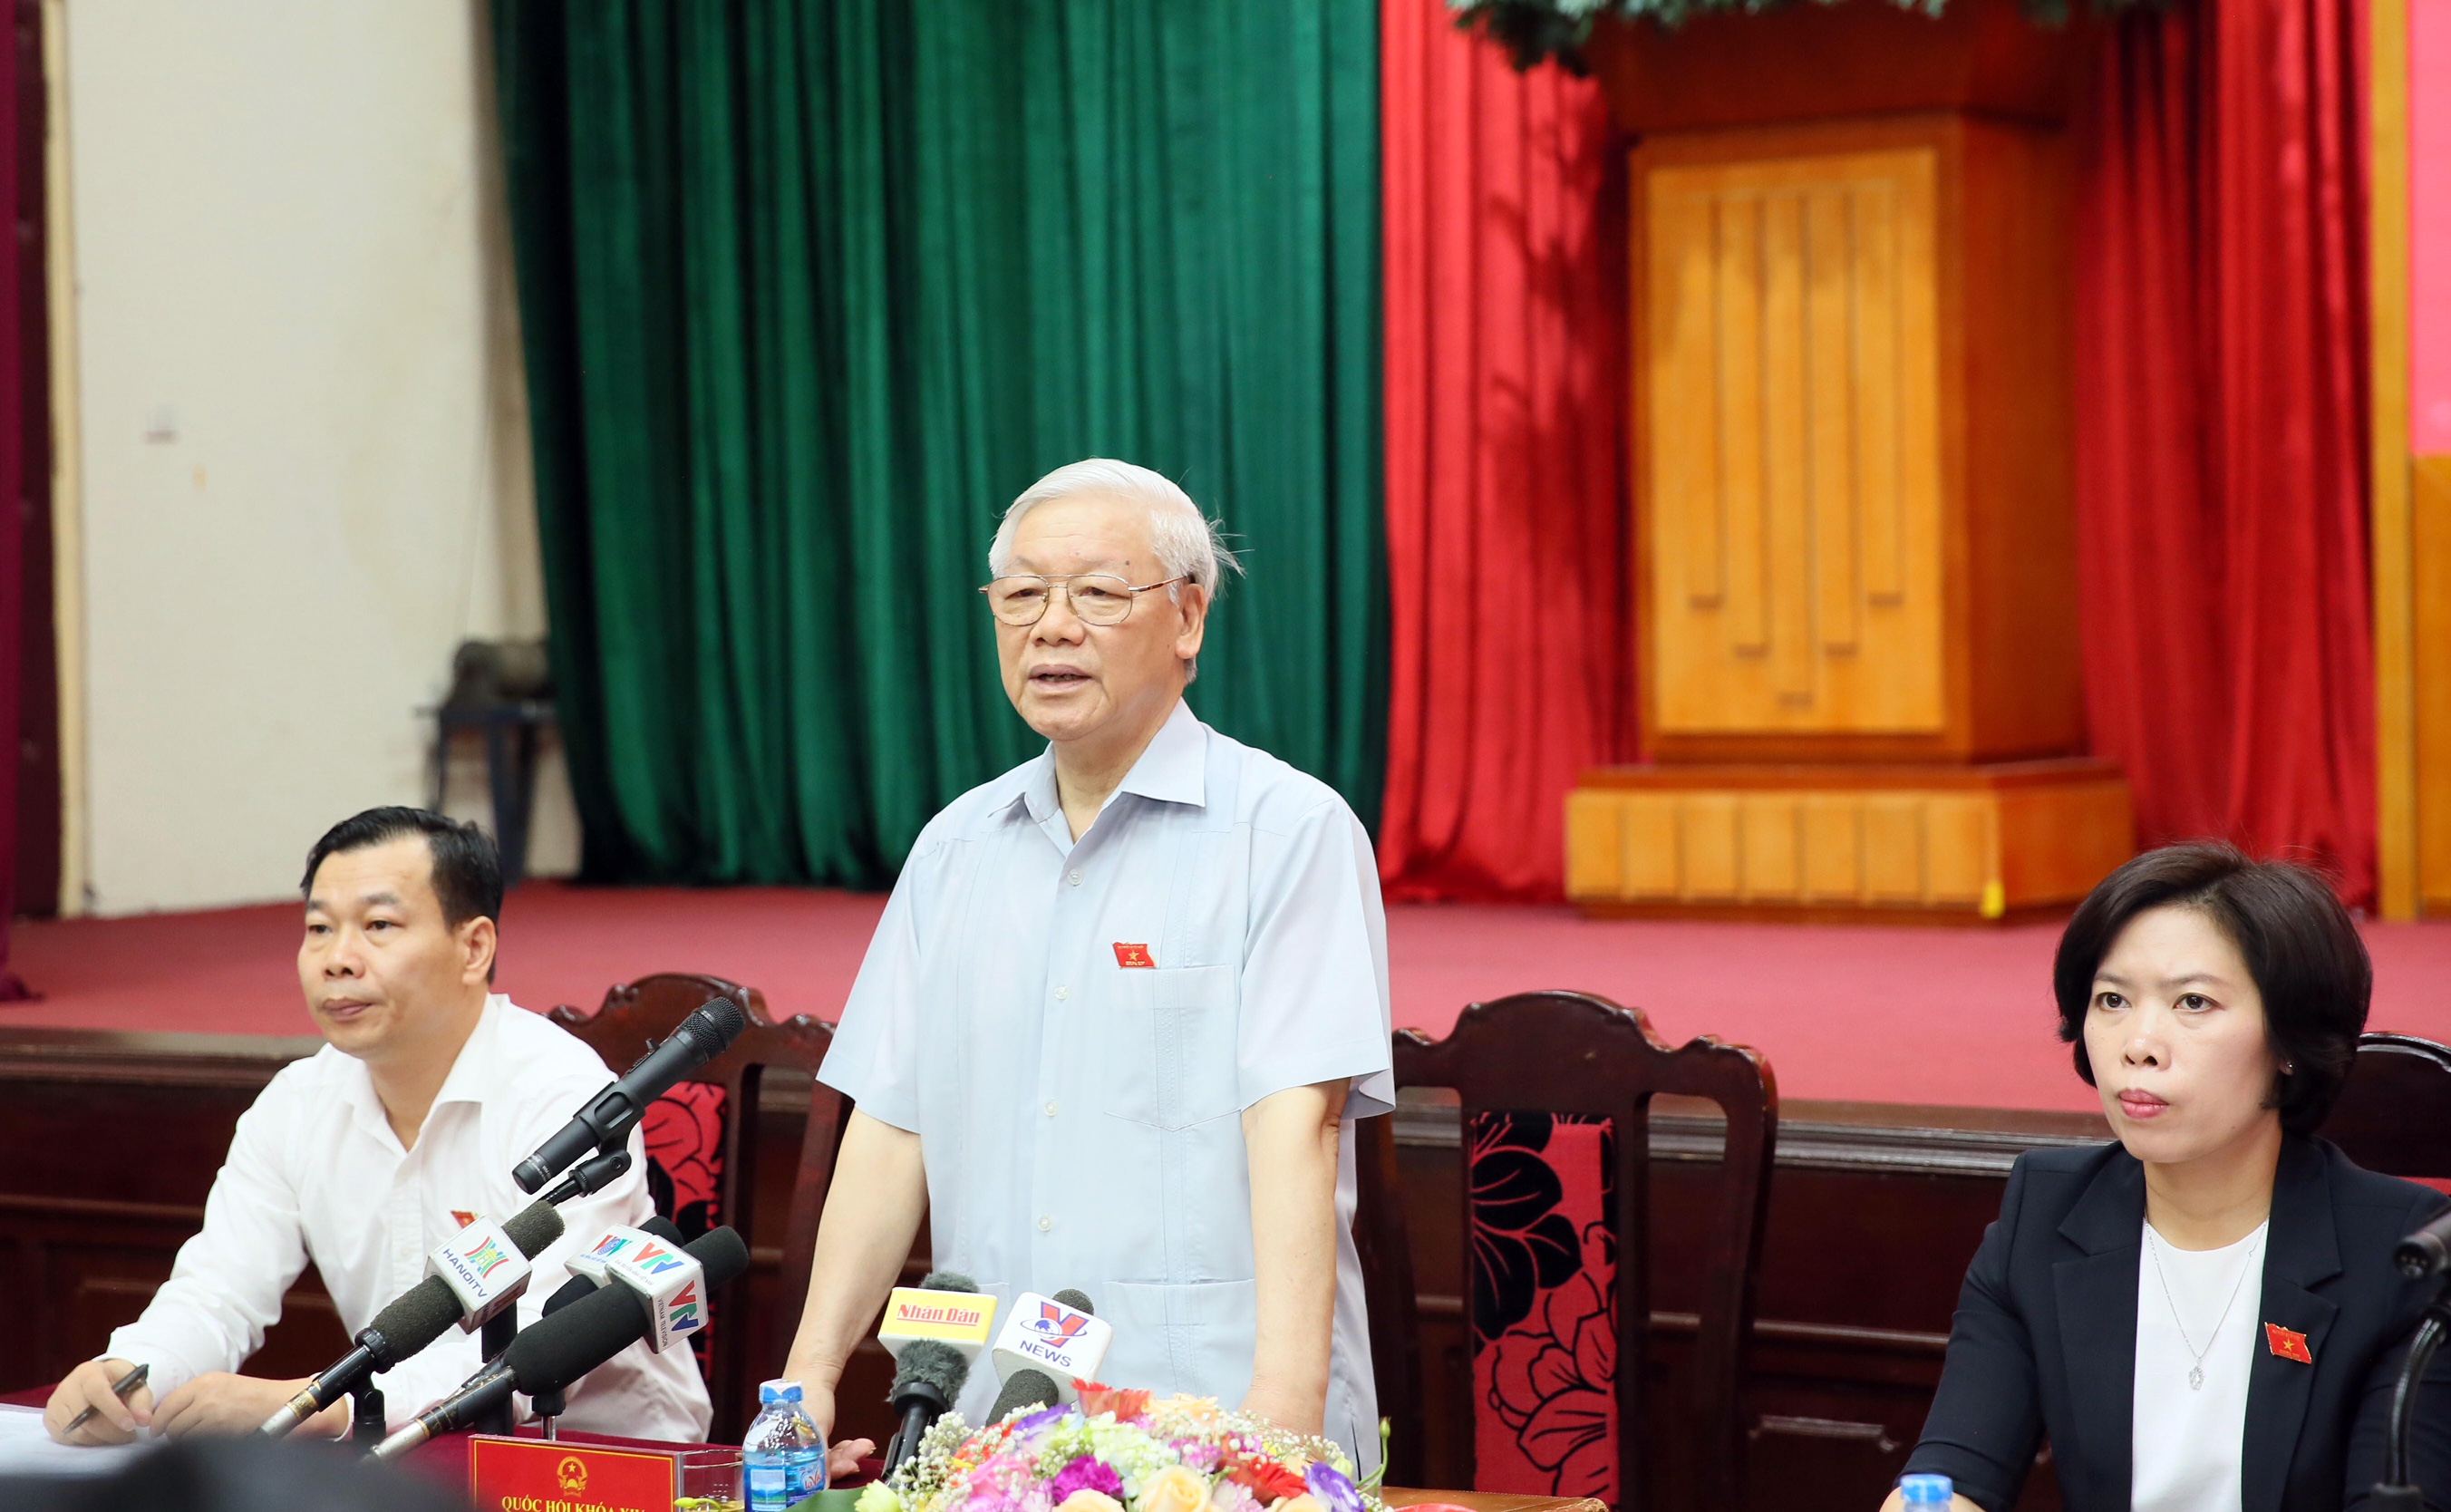 Tổng Bí thư Nguyễn Phú Trọng tiếp xúc cử tri